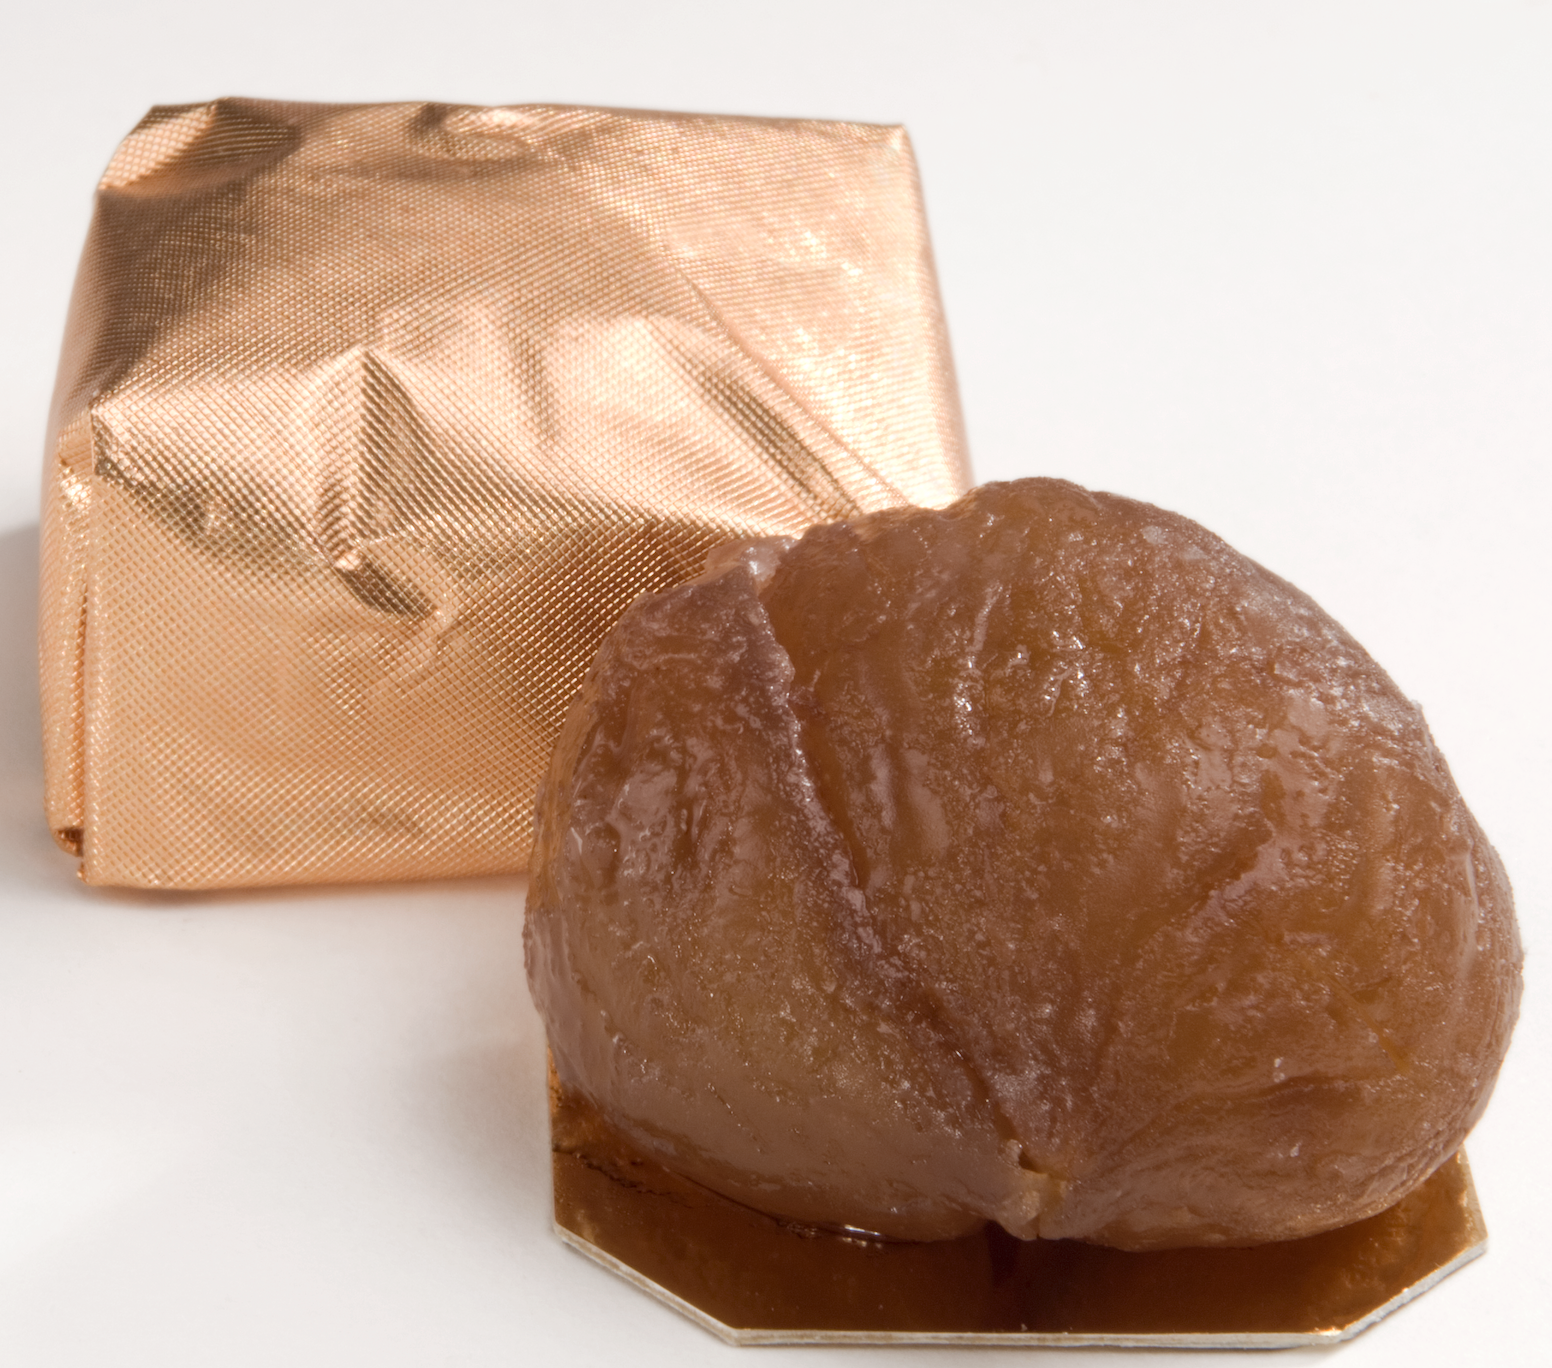 Ballotin de 250 g de Marrons glacés enveloppés d'or (10 marrons)